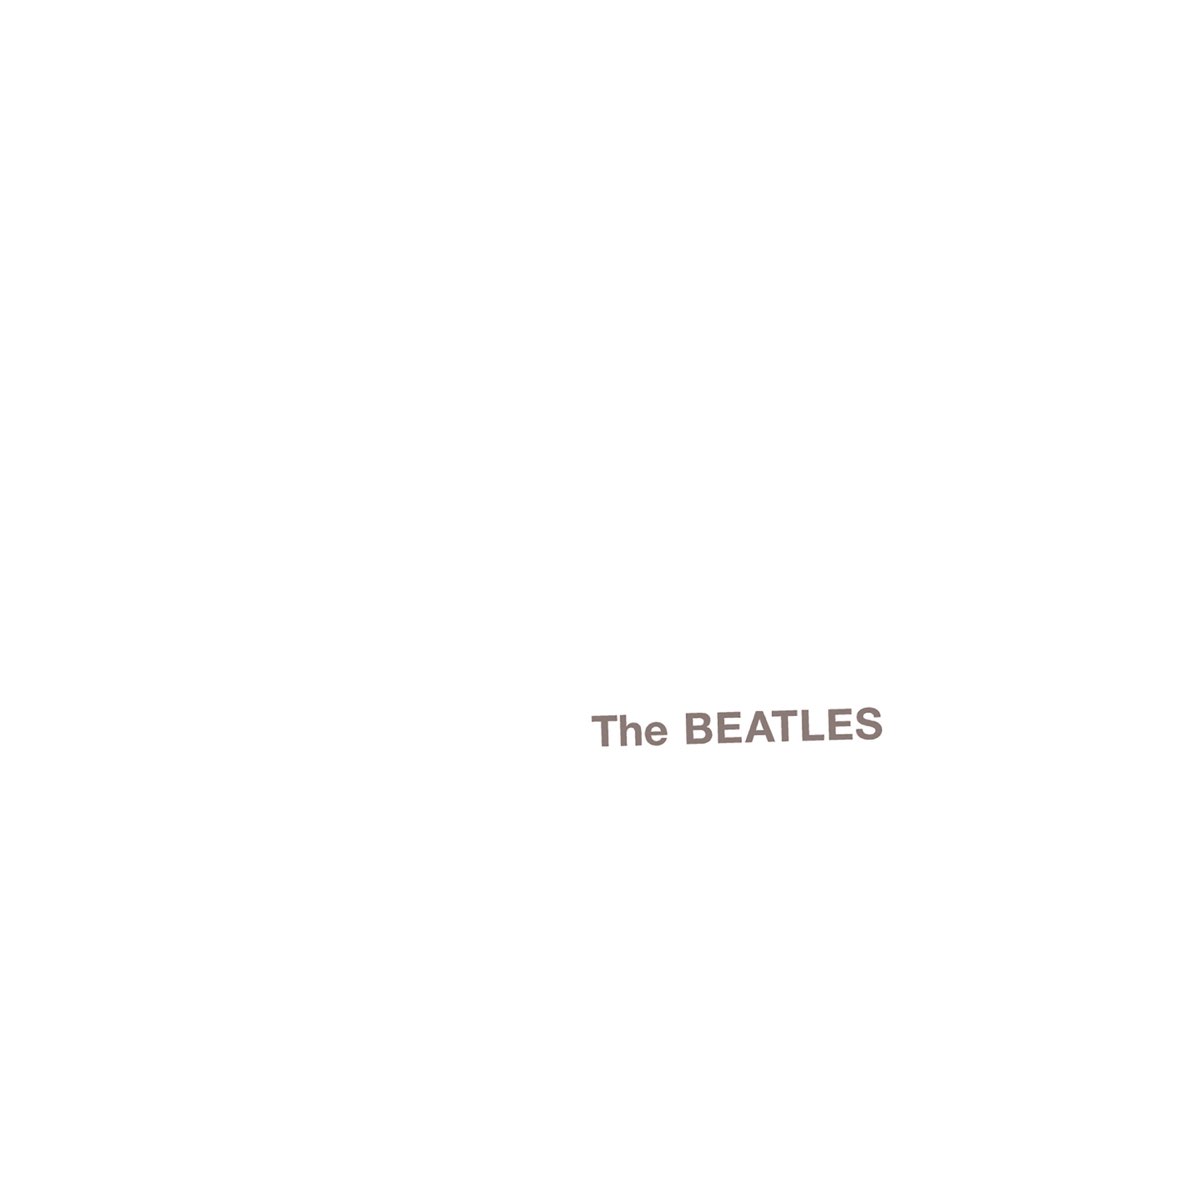 The Beatles — Revolution 9 cover artwork